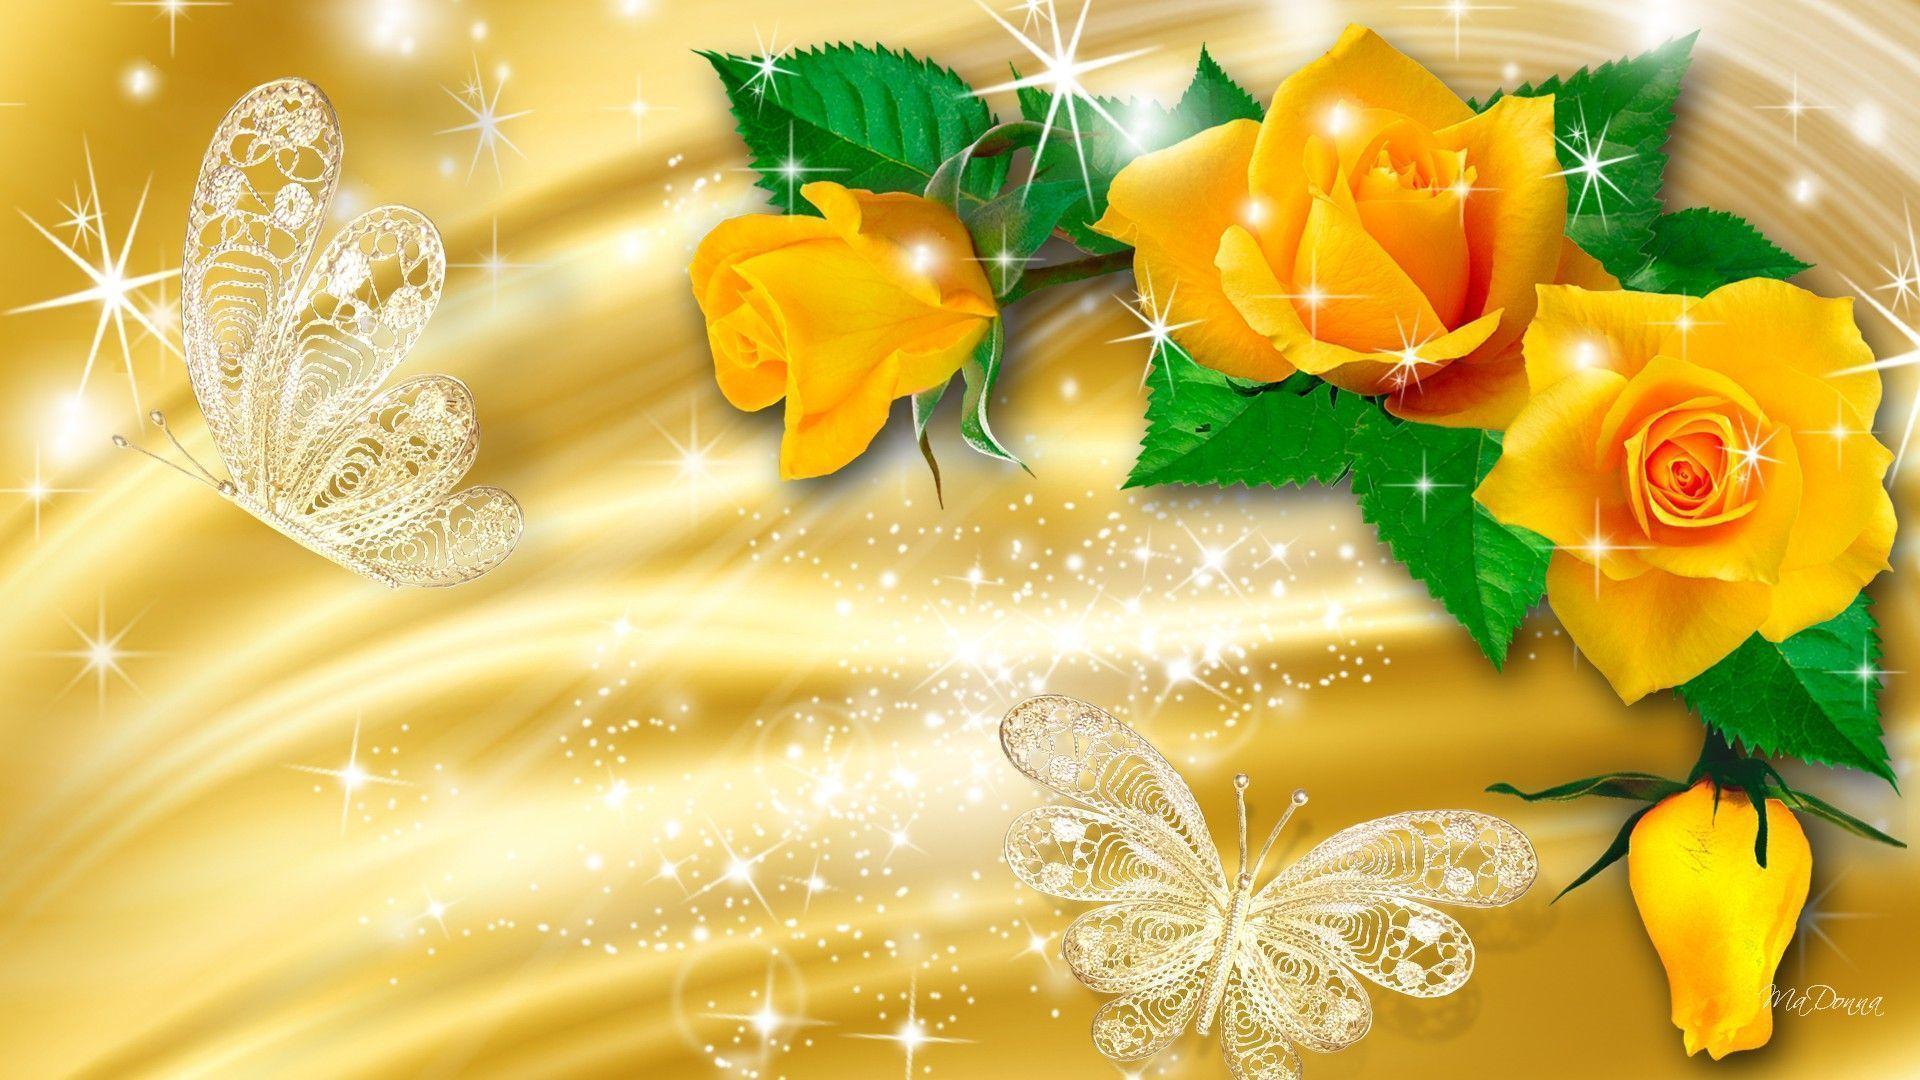 Hoa hồng vàng: Hình ảnh những bông hoa hồng vàng đầy sức sống và đẹp tuyệt vời sẽ chăm sóc tinh thần của bạn, giúp bạn thoát khỏi áp lực cuộc sống và tìm lại cảm hứng và sự lạc quan.